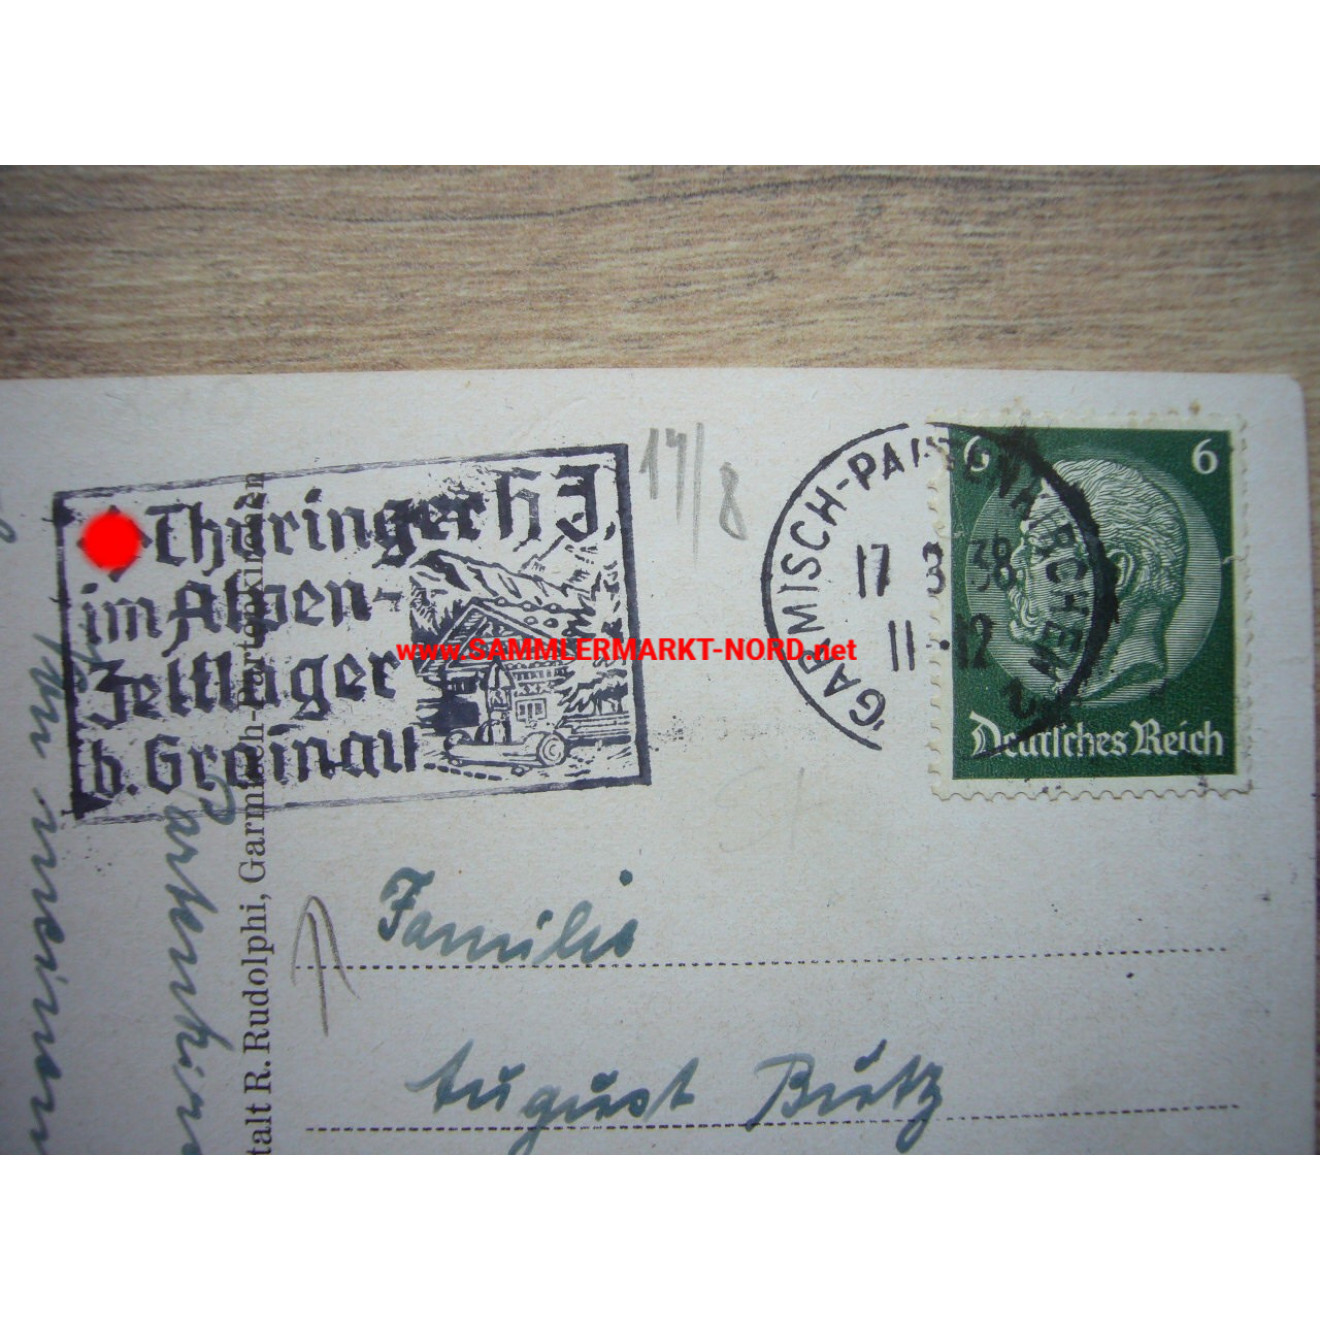 Postkarte 1938 - Thüringer HJ im Alpen Zeltlager bei Grainau